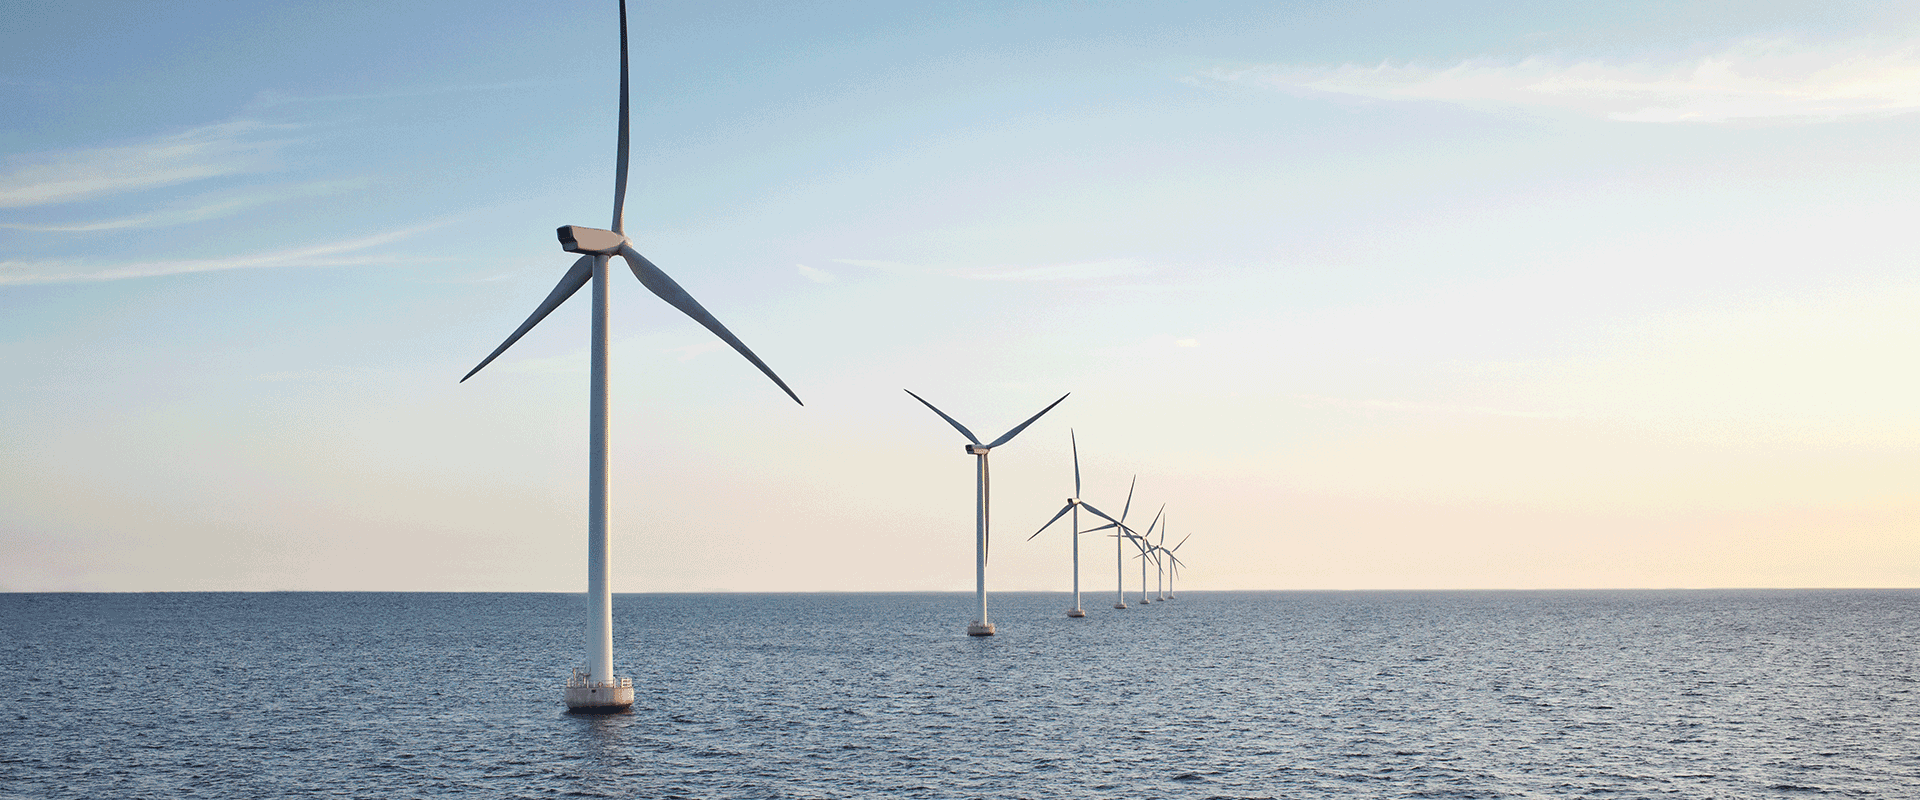 windmills on the ocean